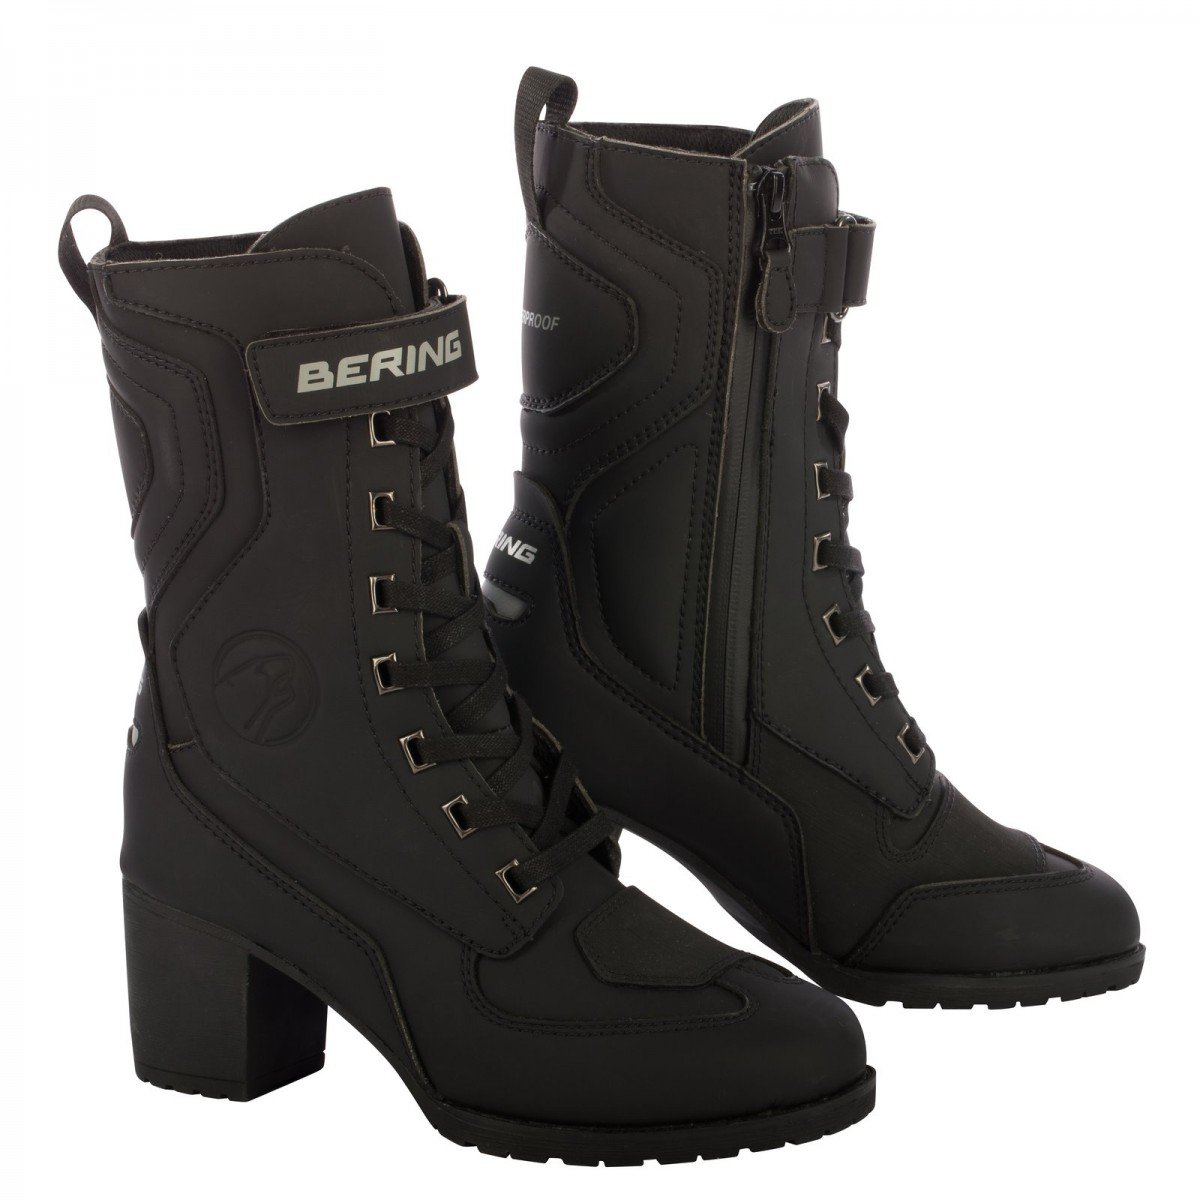 Image of Bering Lady Leonarda 2 Shoes Black Size 38 ID 3660815165287